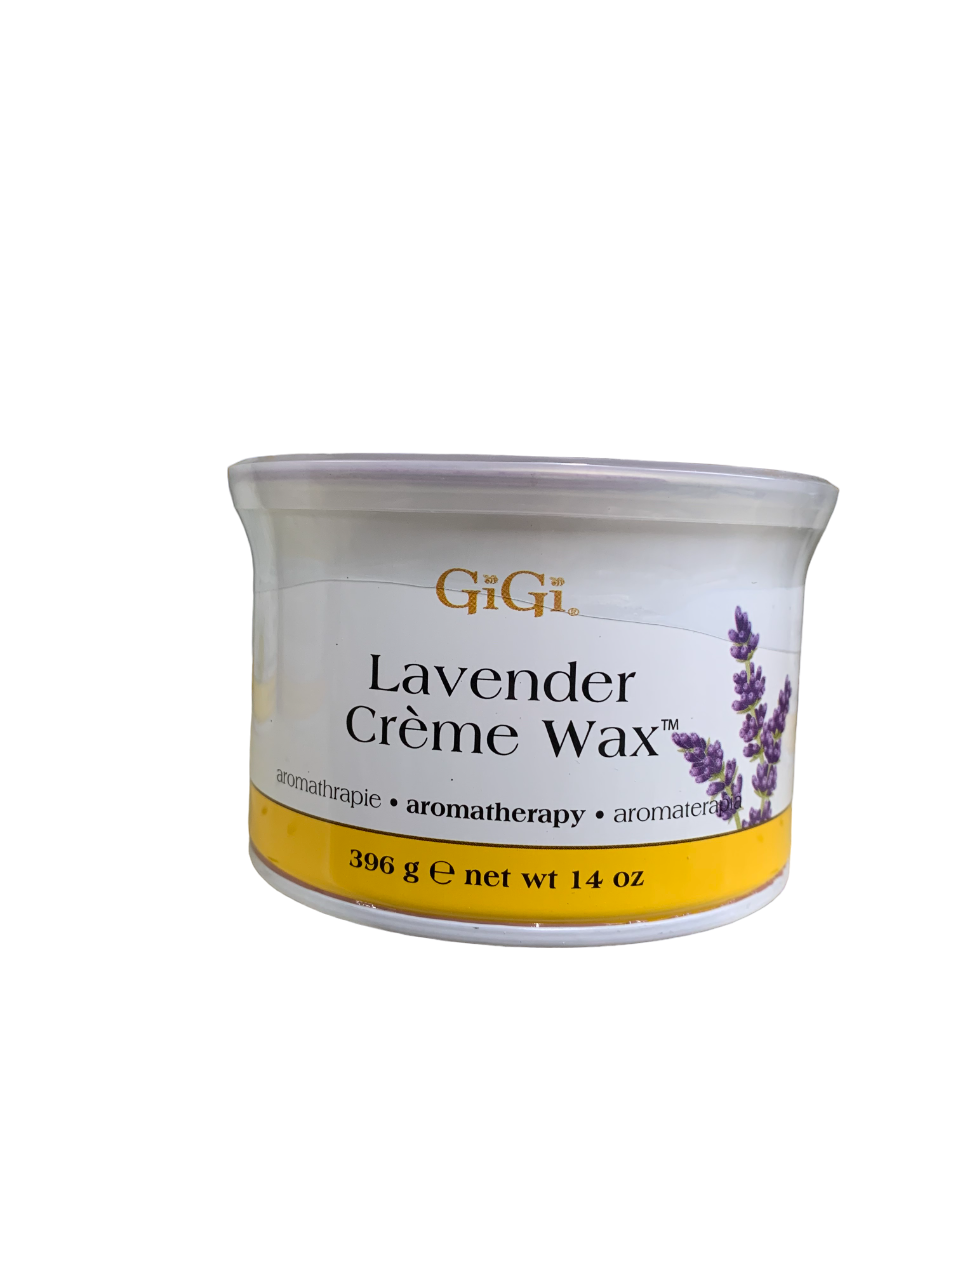 GiGi Lavender Creme Wax